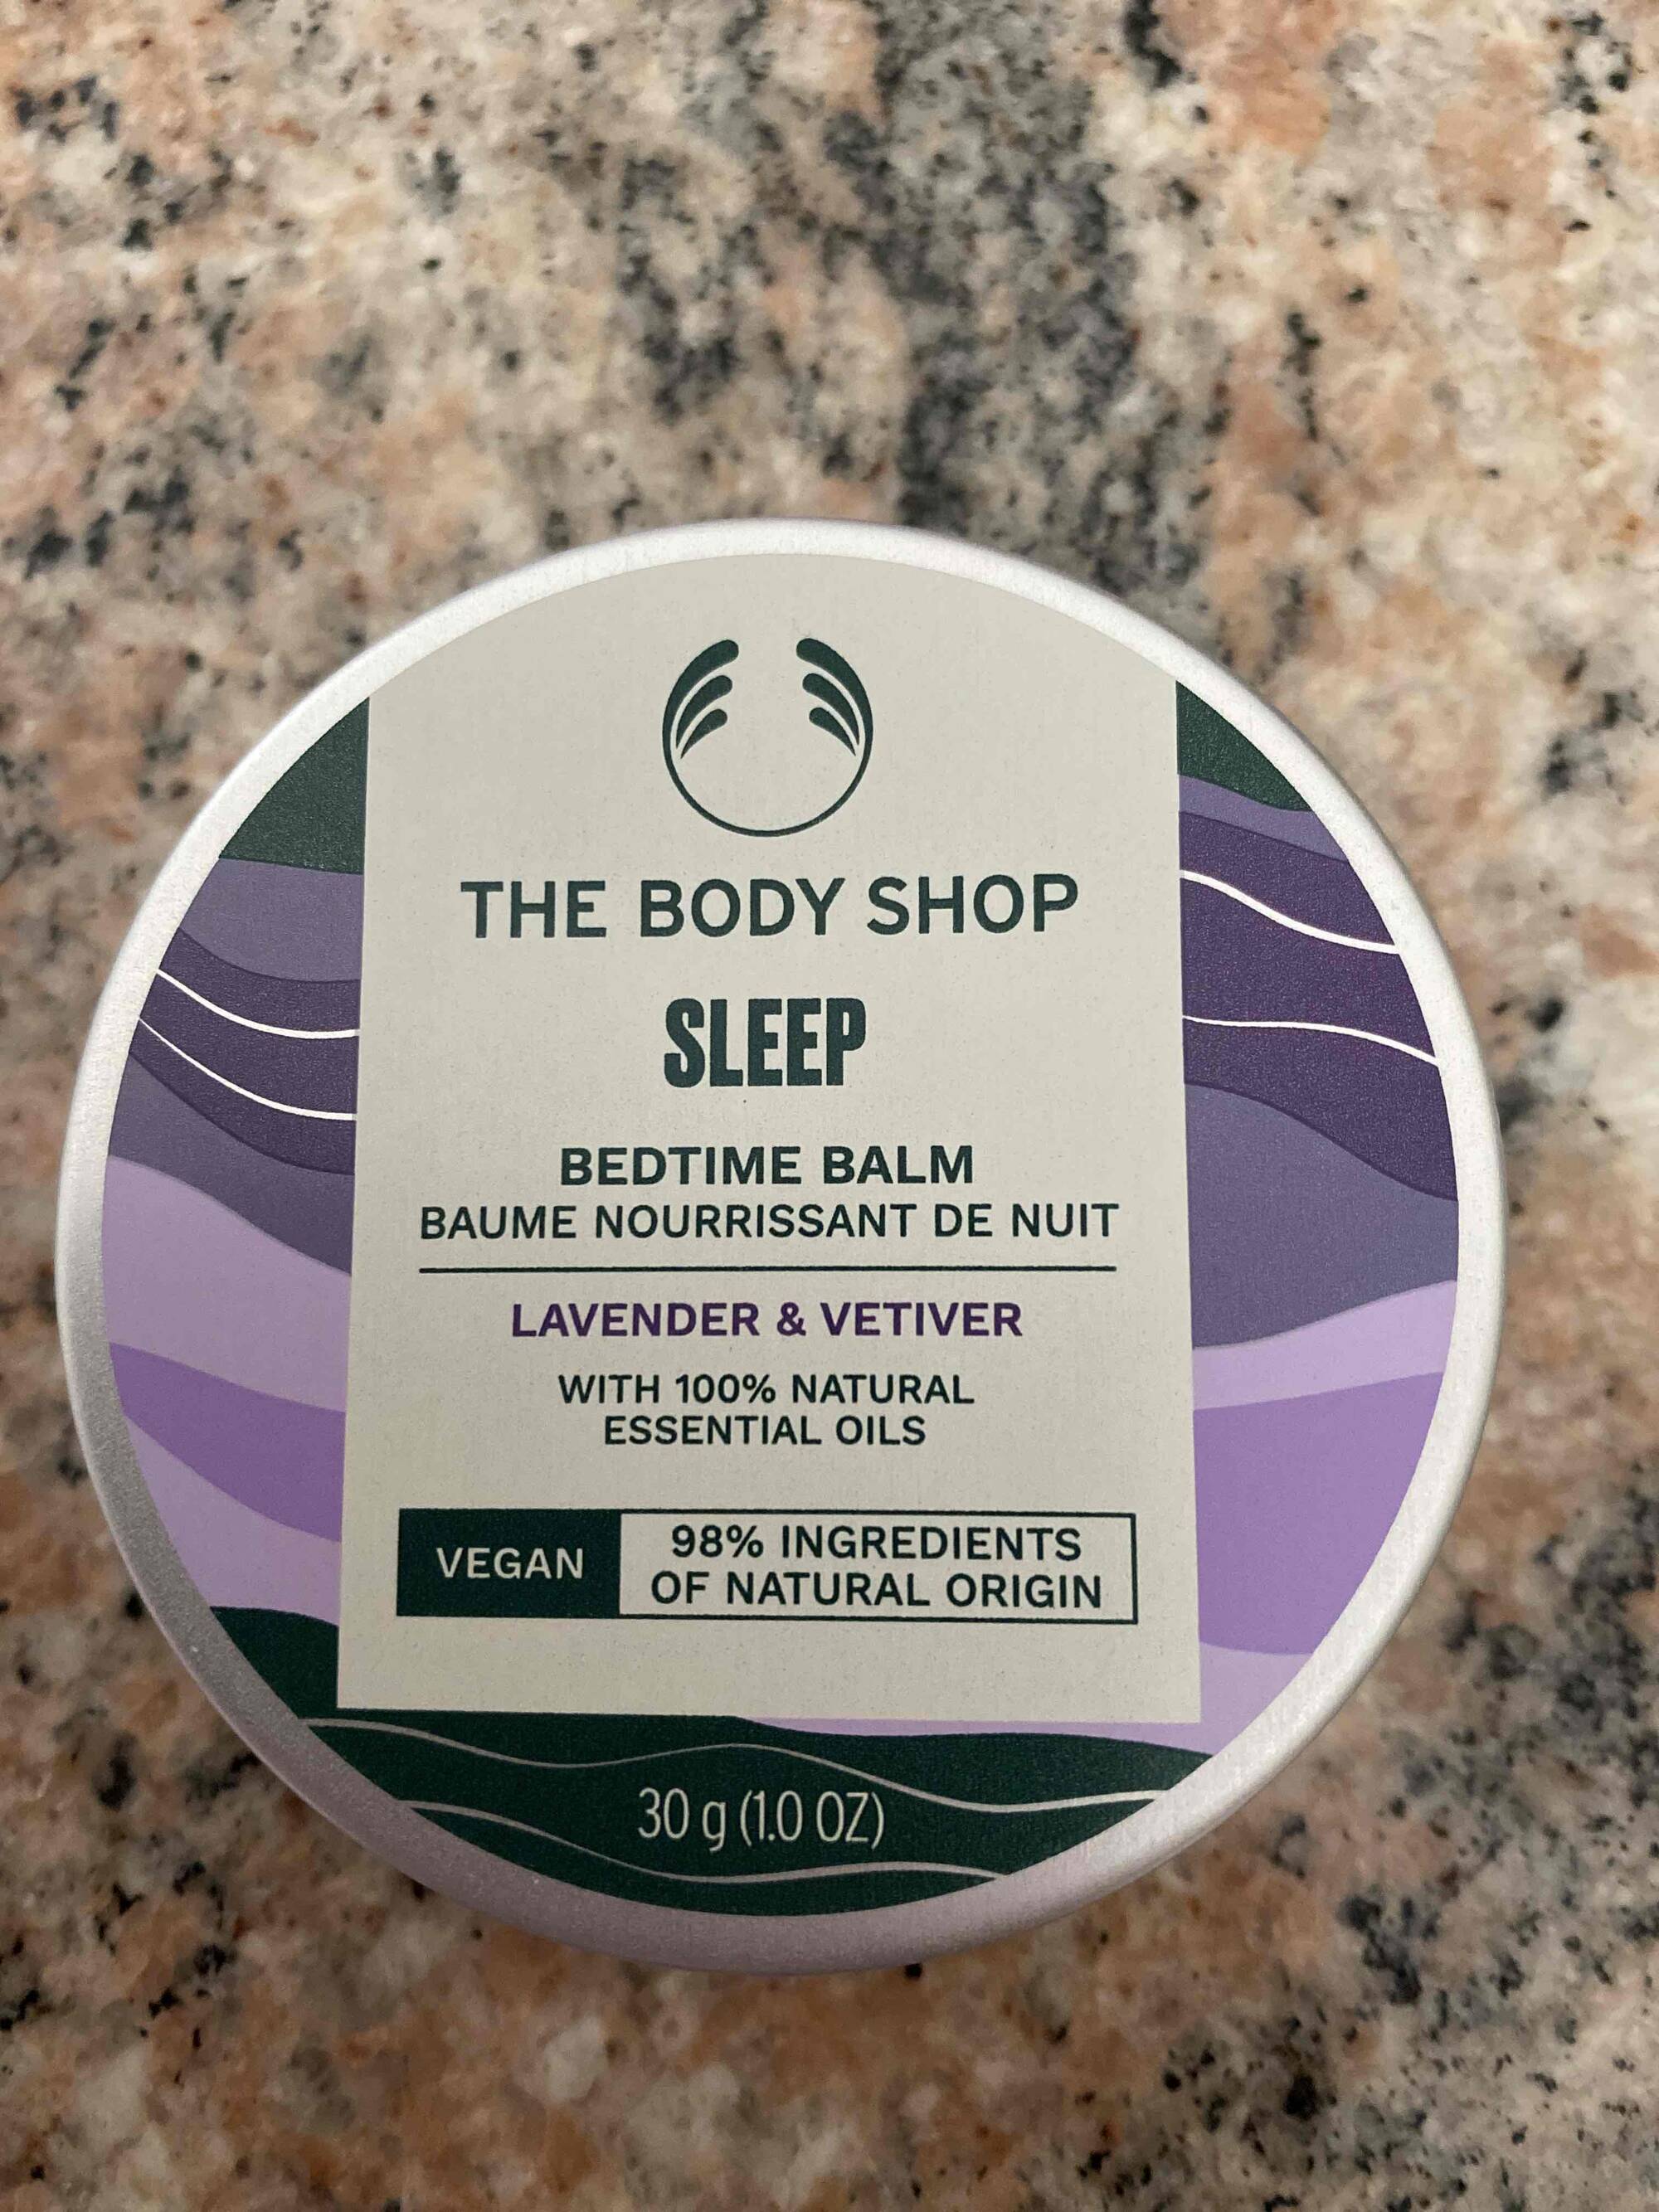 THE BODY SHOP - Sleep lavender & vetiver - Baume nourrissant de nuit